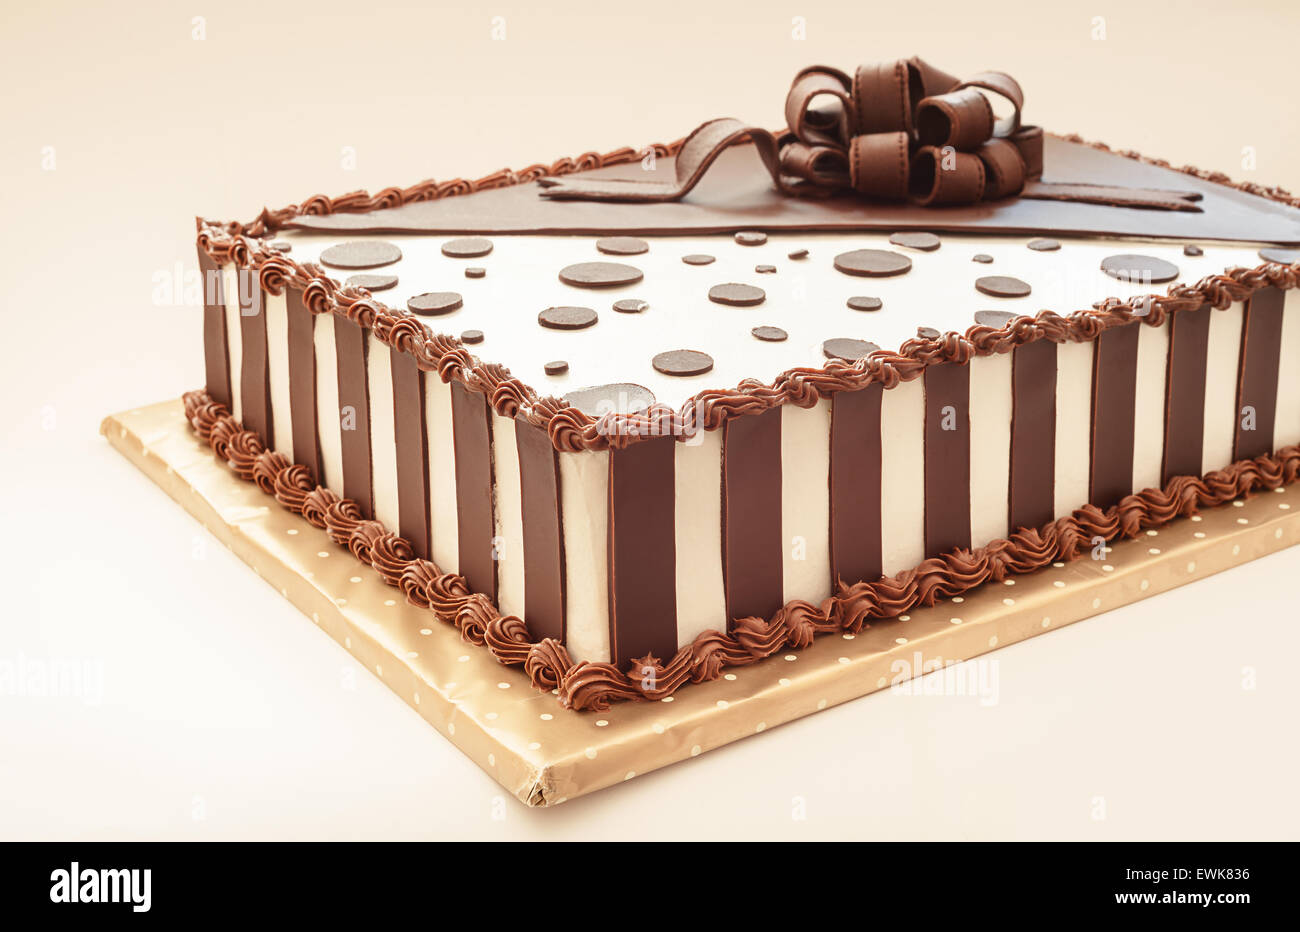 Gâteau au chocolat sur fond blanc, les détails de décoration Photo Stock -  Alamy